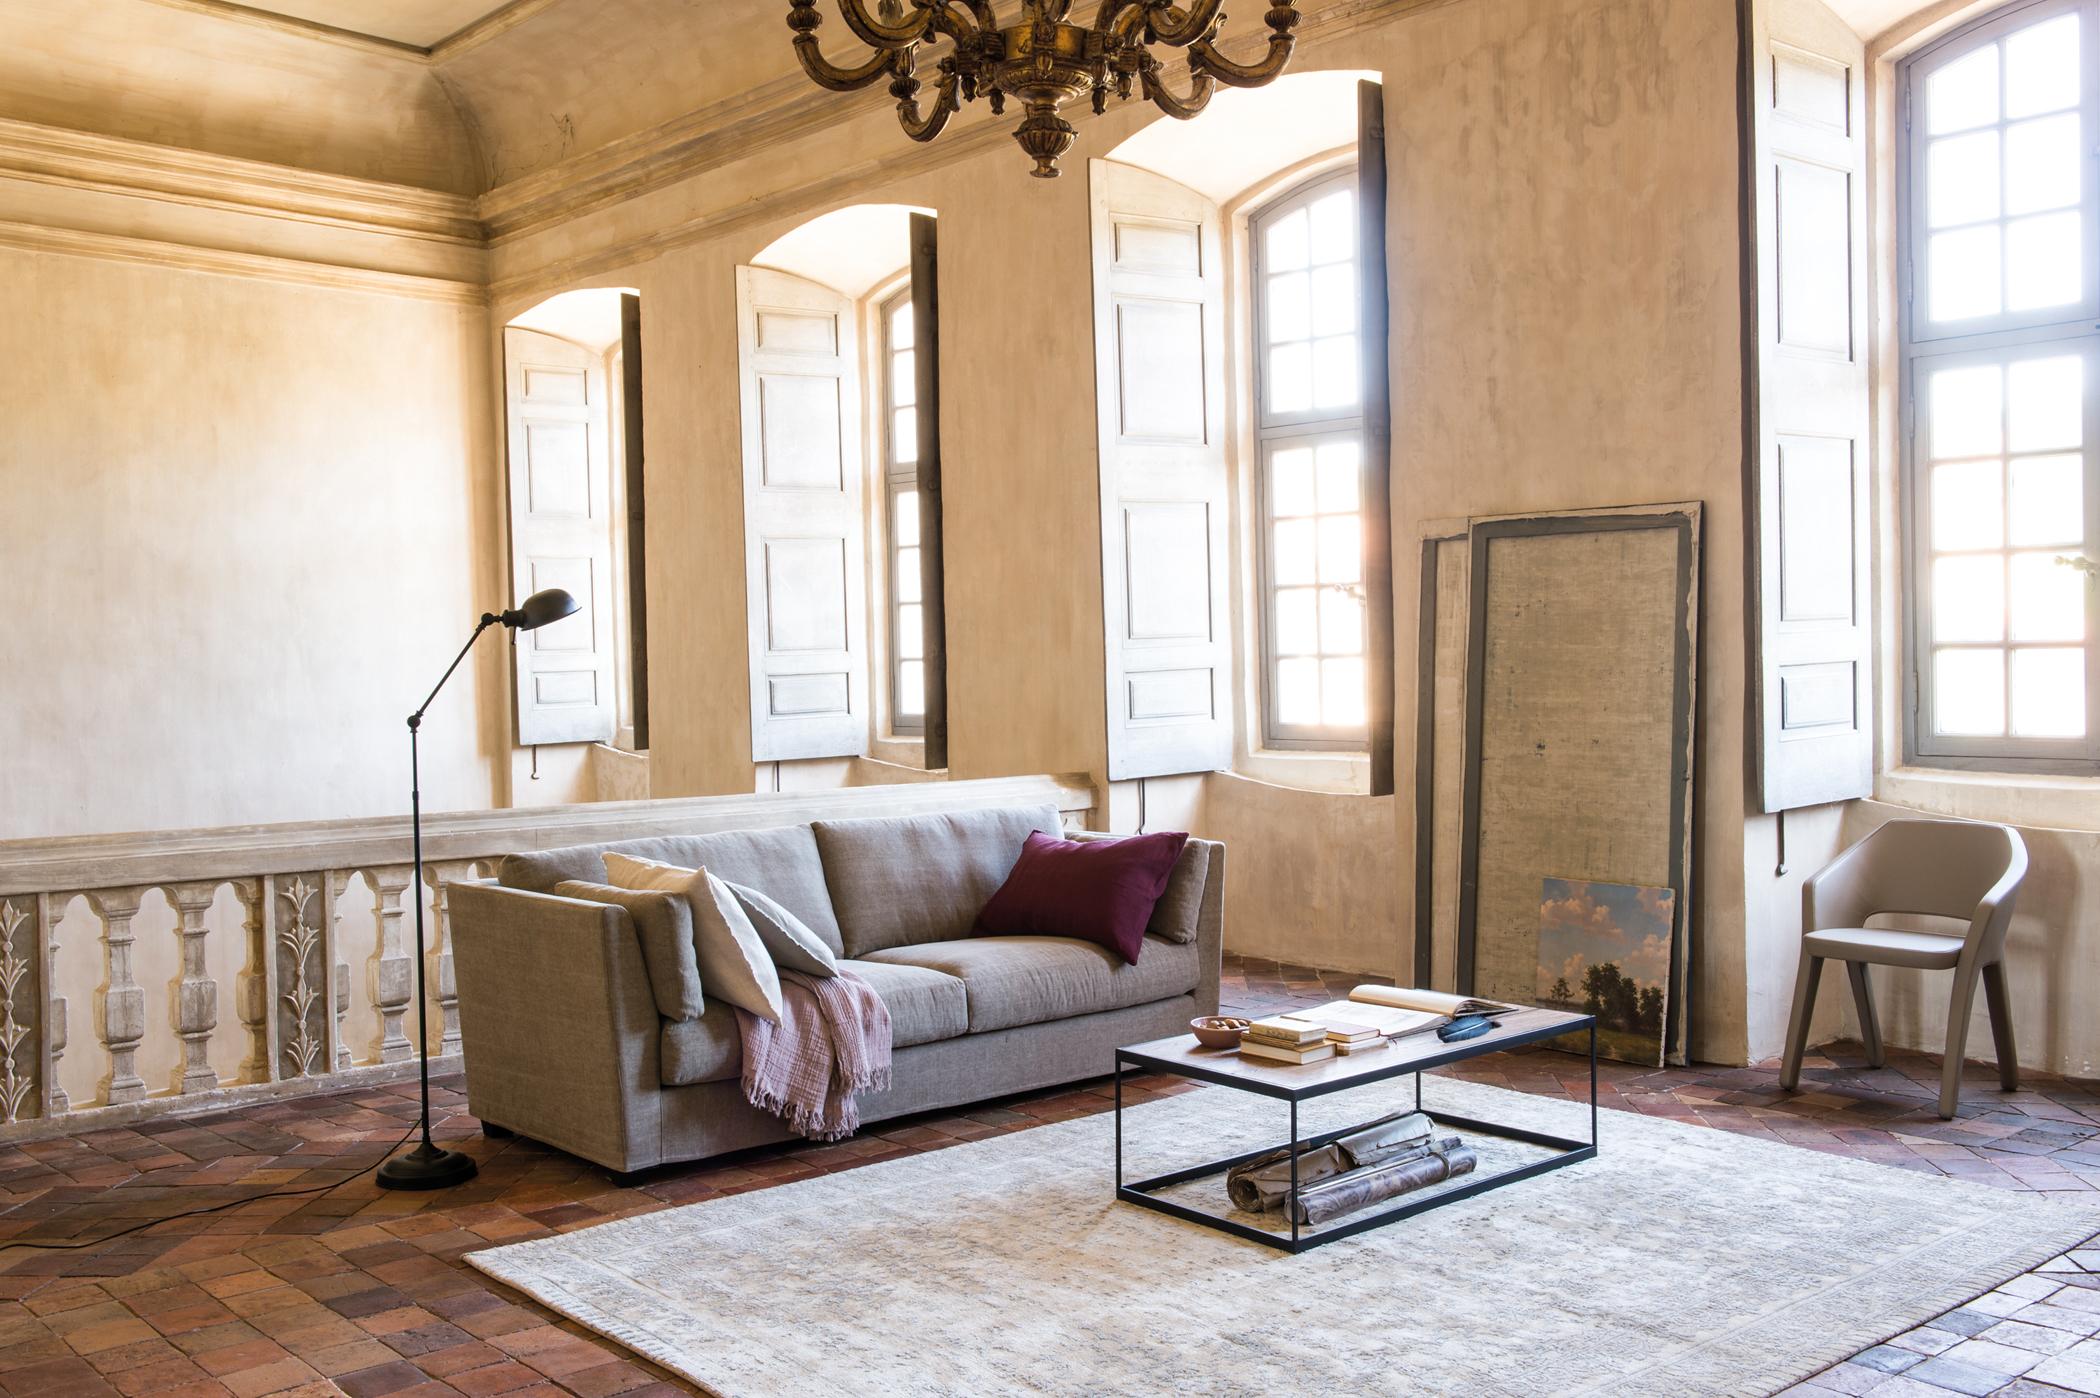 Wohnzimmer mit Galerie-Flair #stuhl #couchtisch #teppich #kronleuchter #stehlampe #tagesdecke #sofa #metallcouchtisch #lampe ©Pfister